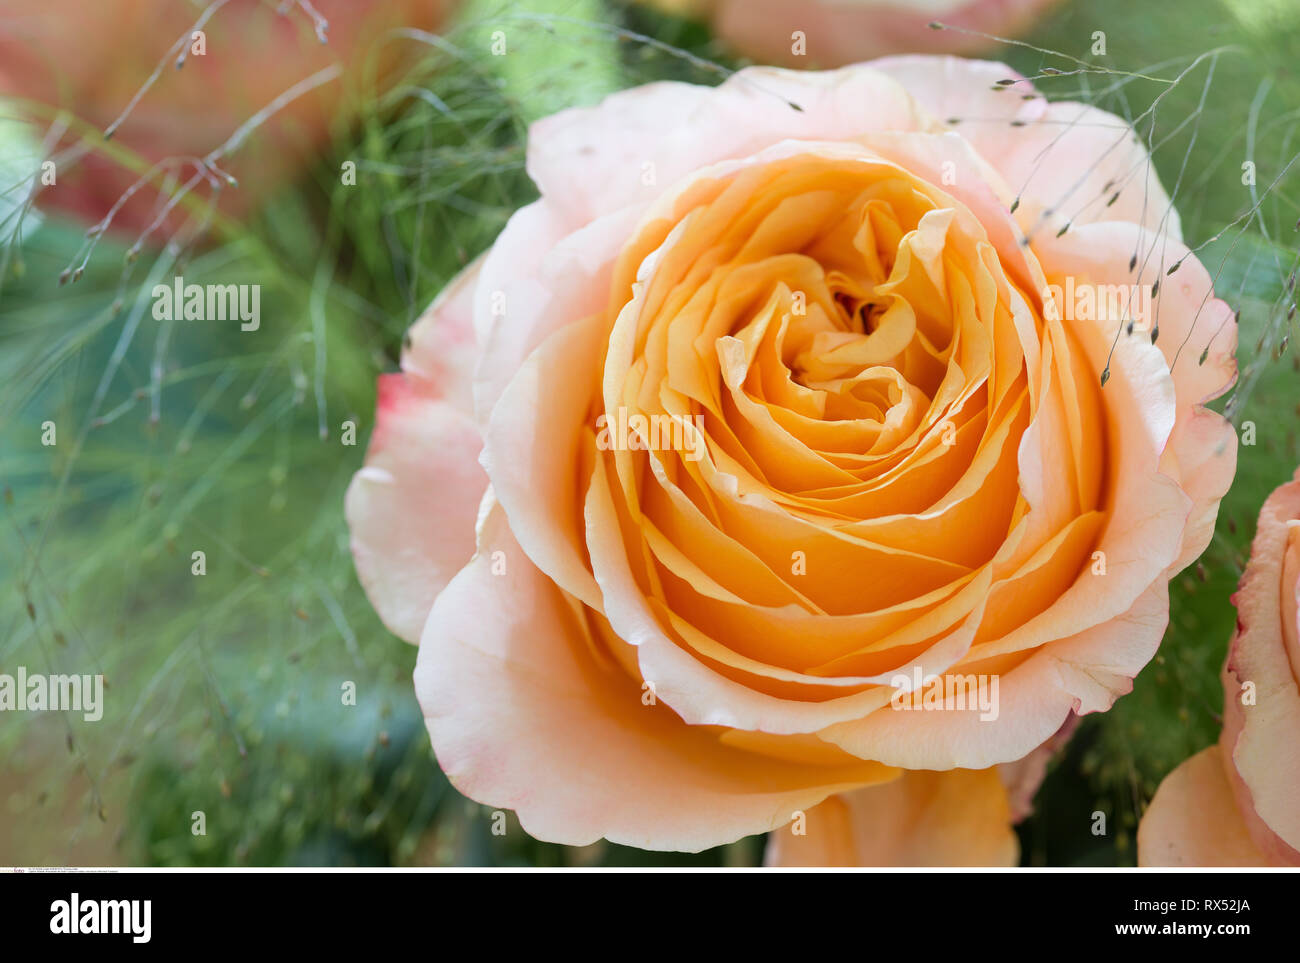 La botanica, rose fiore del tipo 'Caraluna', attenzione! Per Greetingcard-Use / Postcard-Use nei Paesi di lingua tedesca talune restrizioni possono applicare Foto Stock